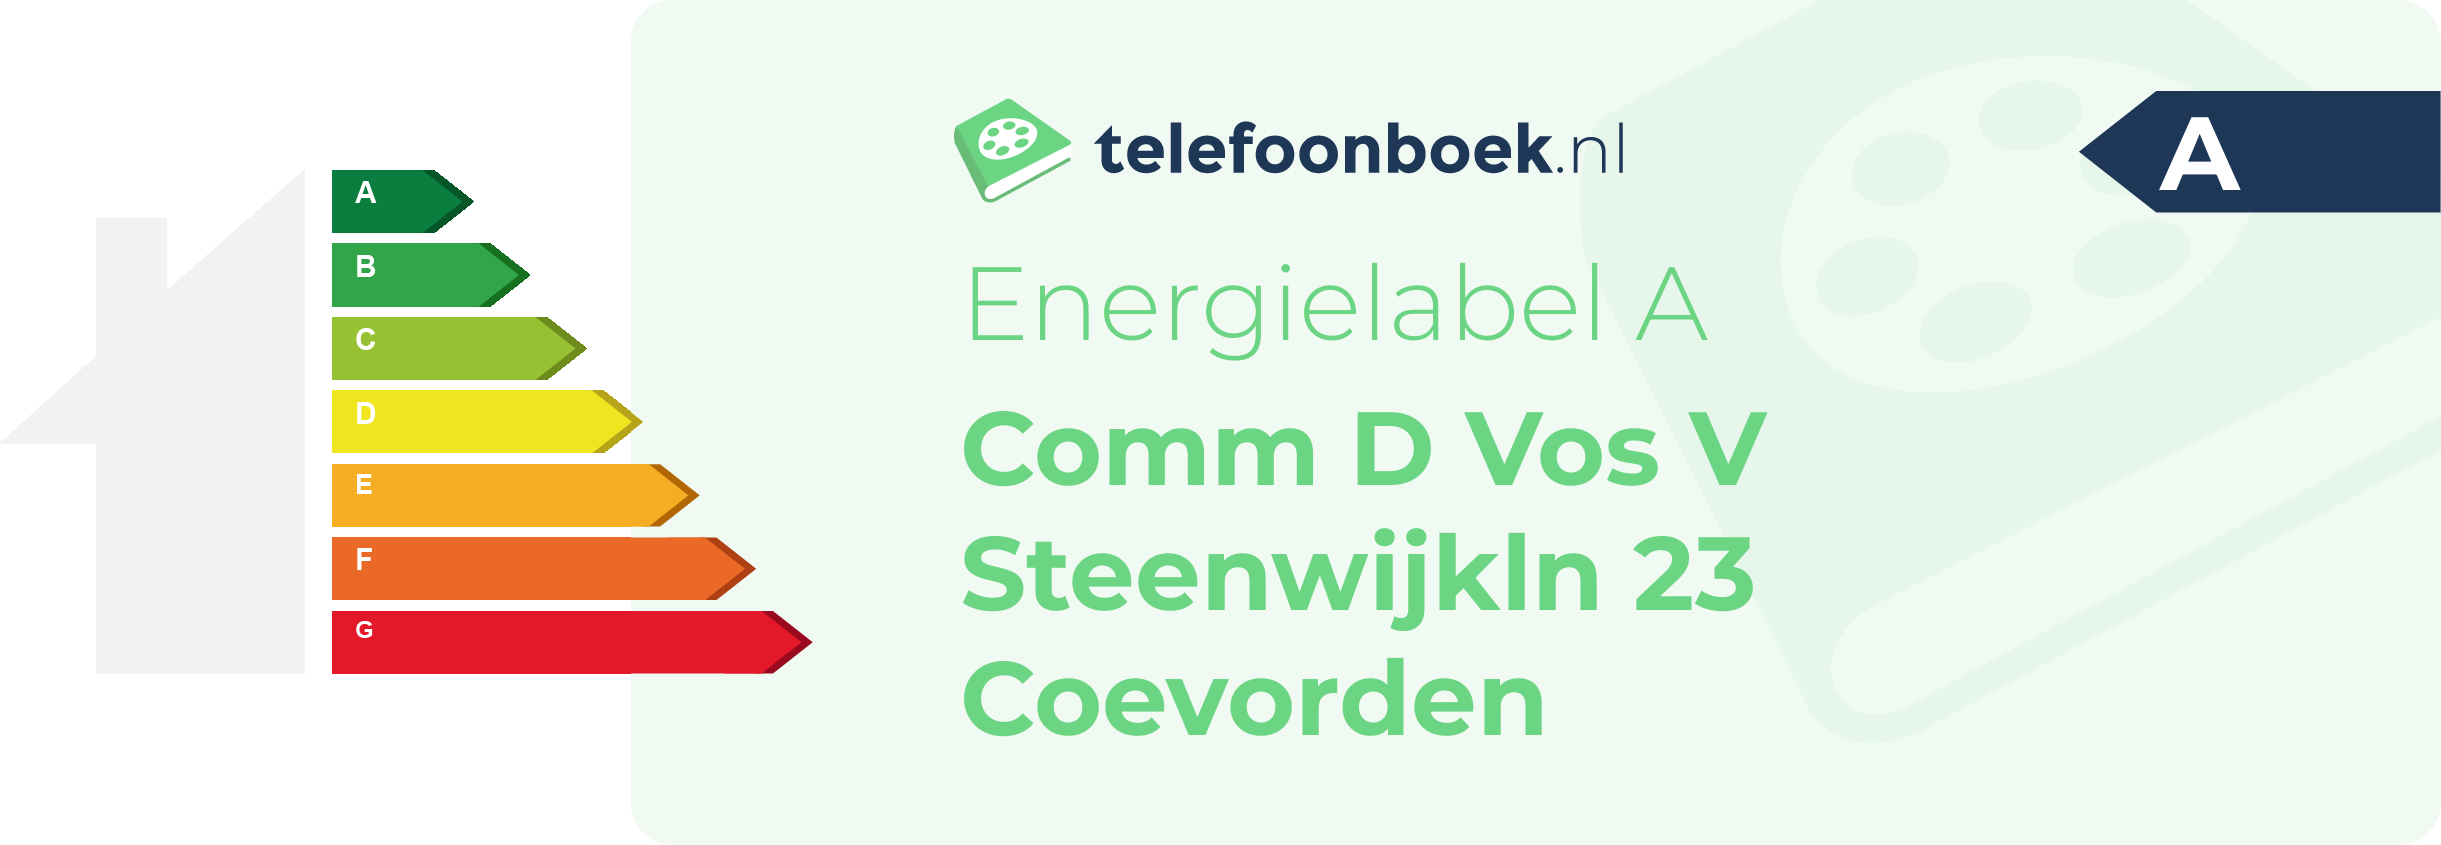 Energielabel Comm D Vos V Steenwijkln 23 Coevorden